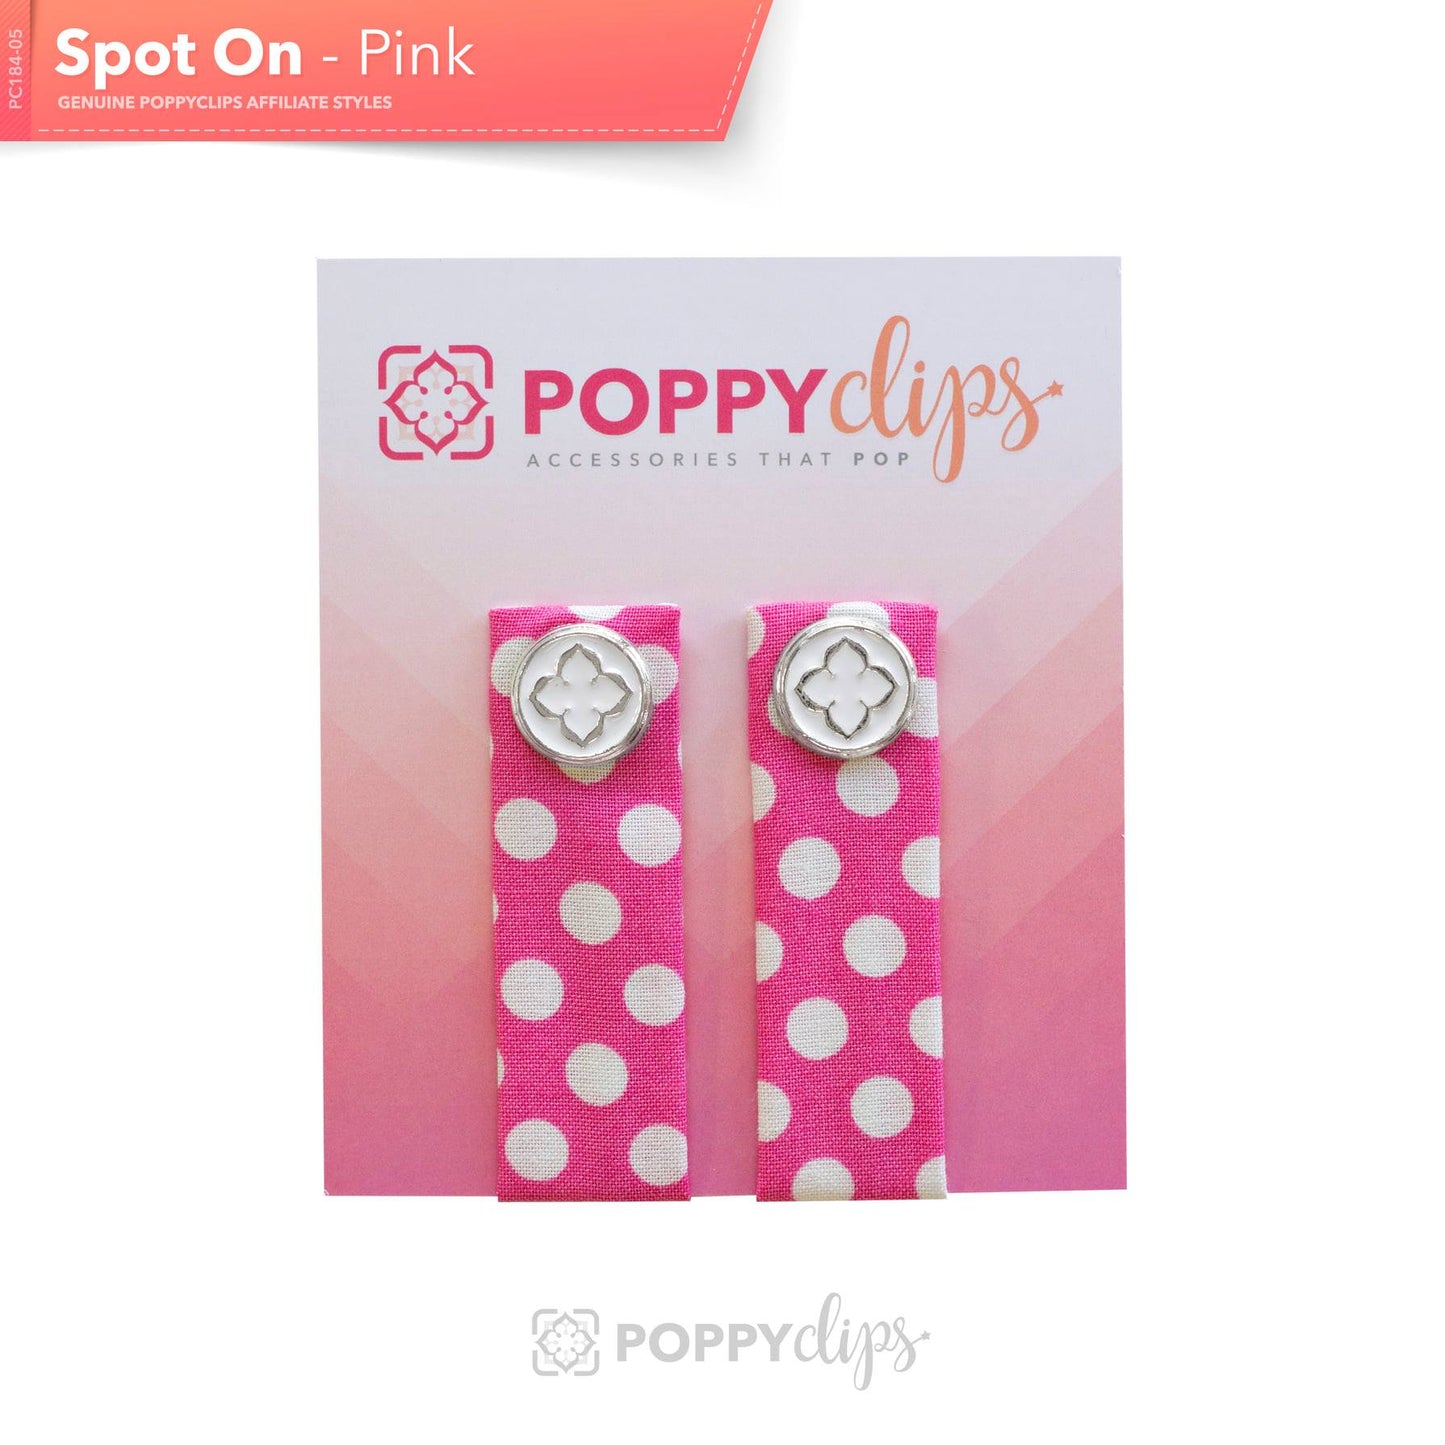 PoppyClips: Spot On - Pink